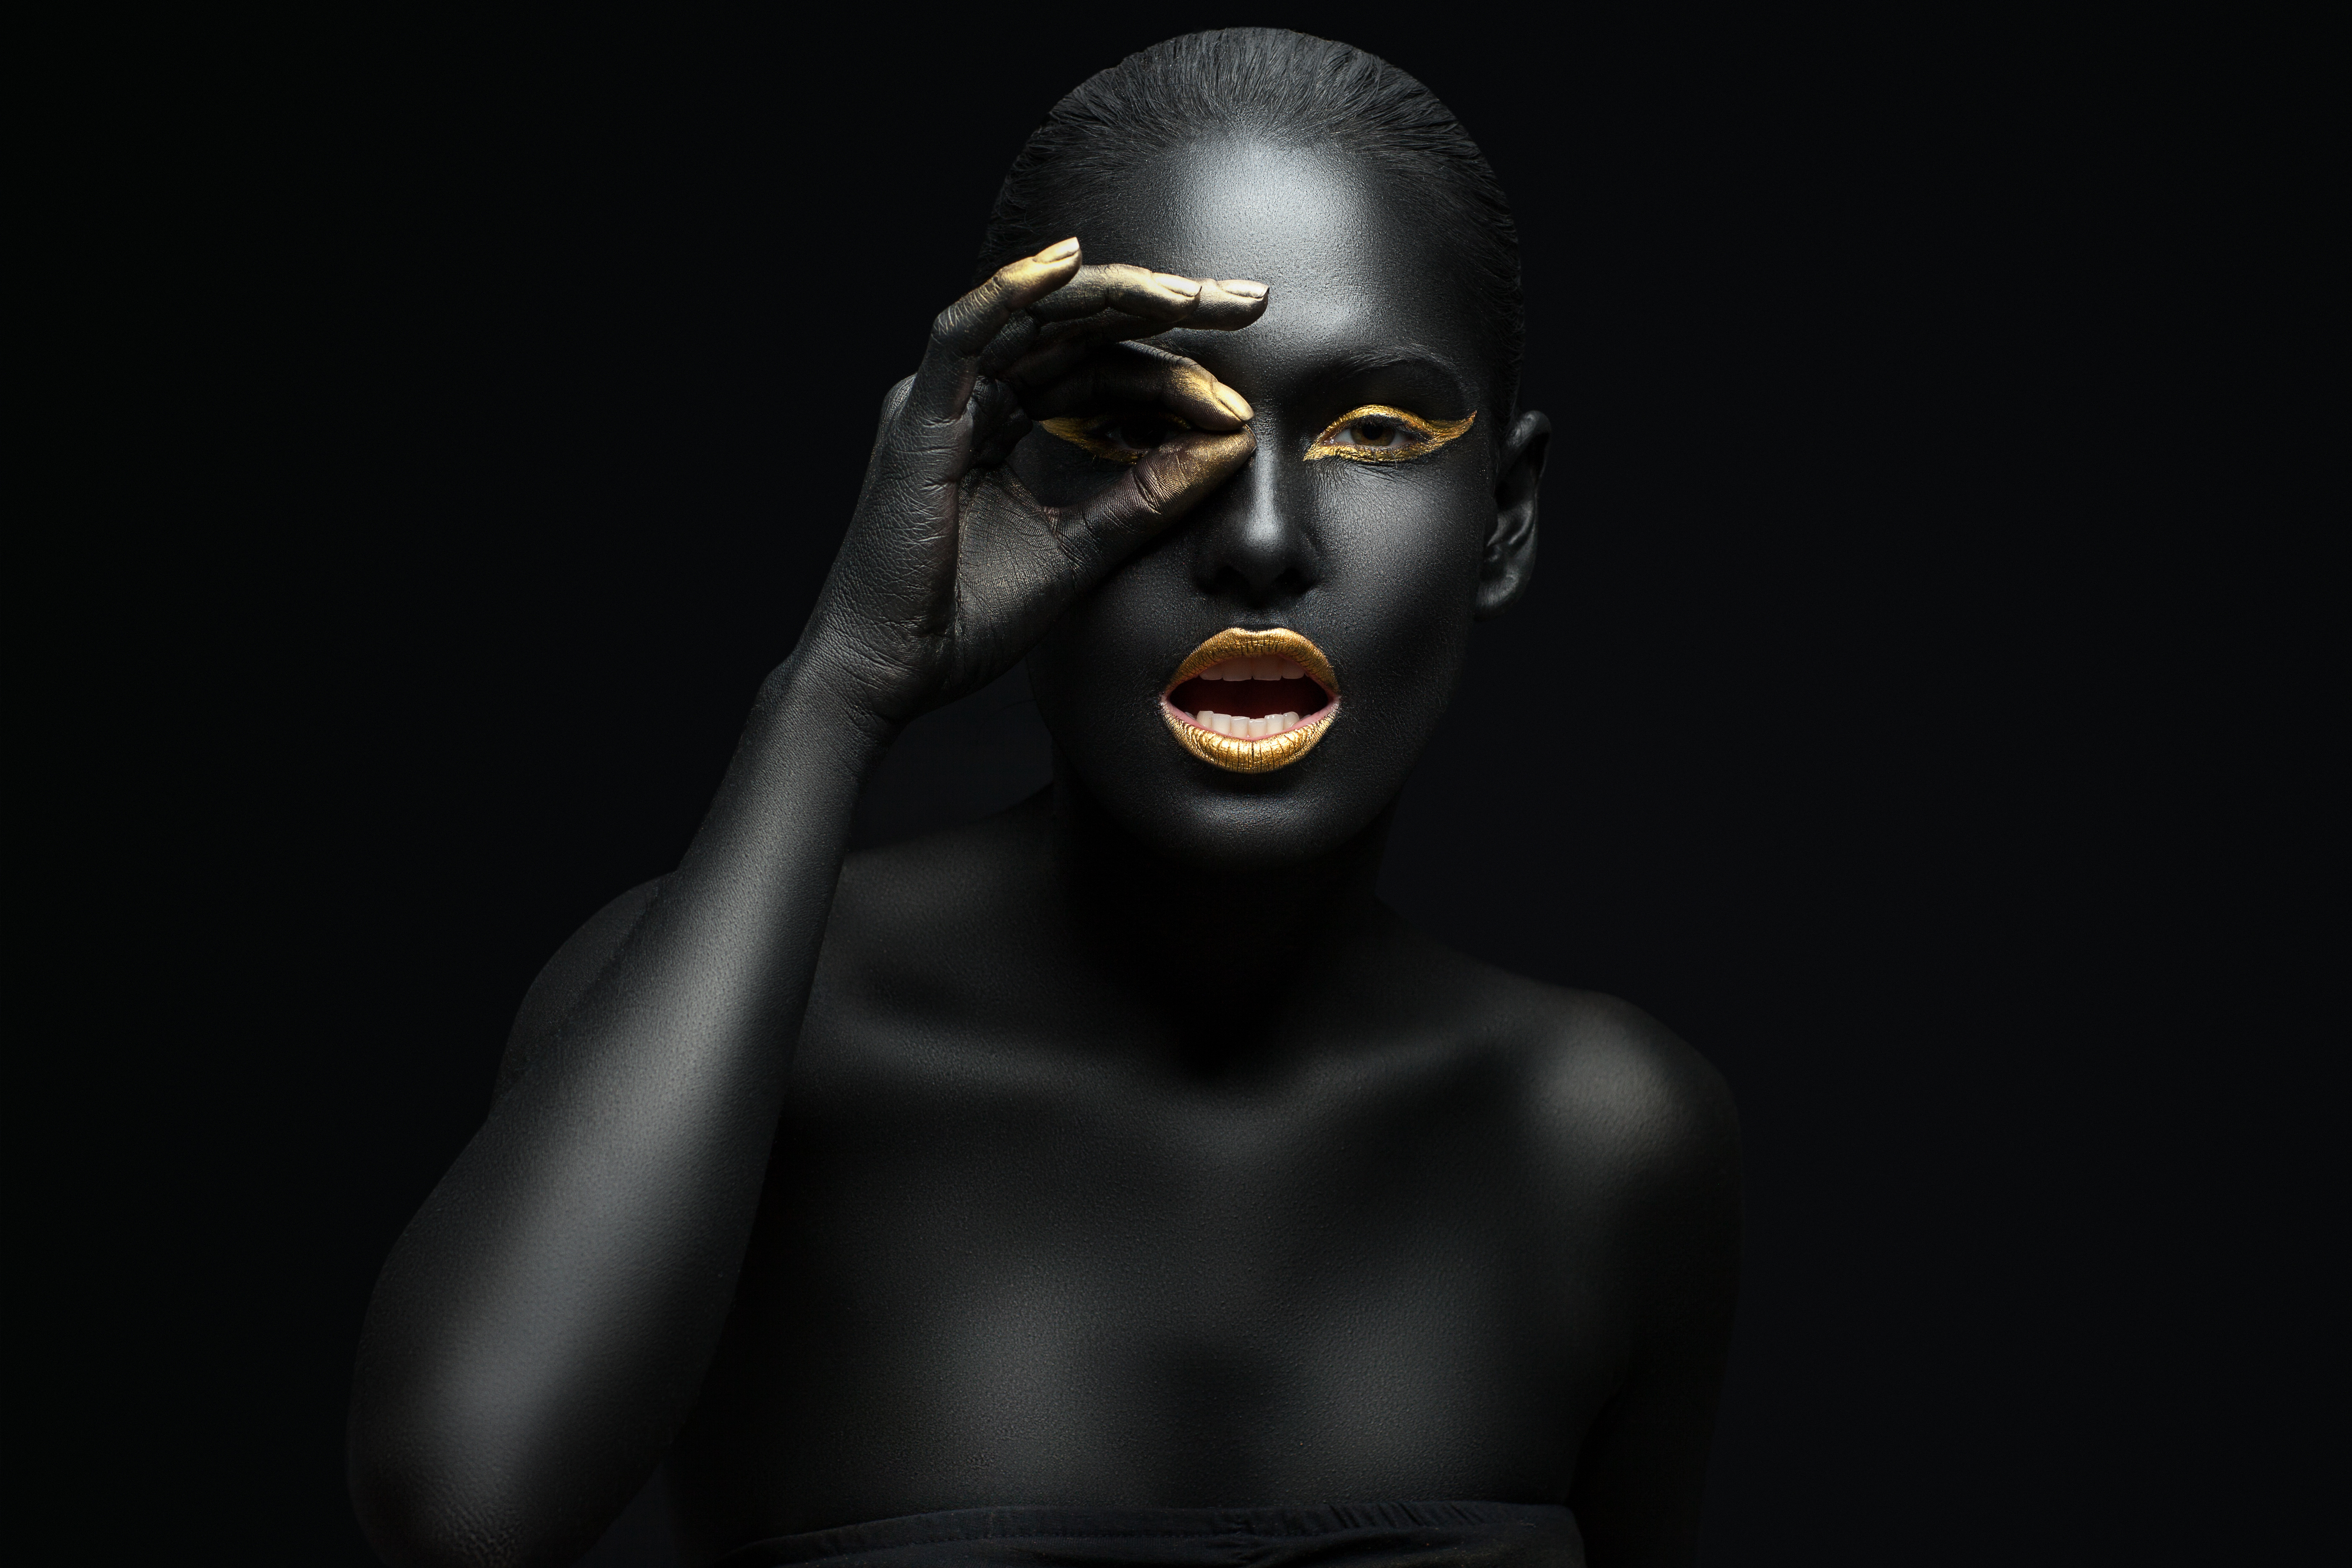 Негритянка г. Девушка в черной краске. Черная девушка с золотом. Черная девушка в золоте. Негритянка на черном фоне.